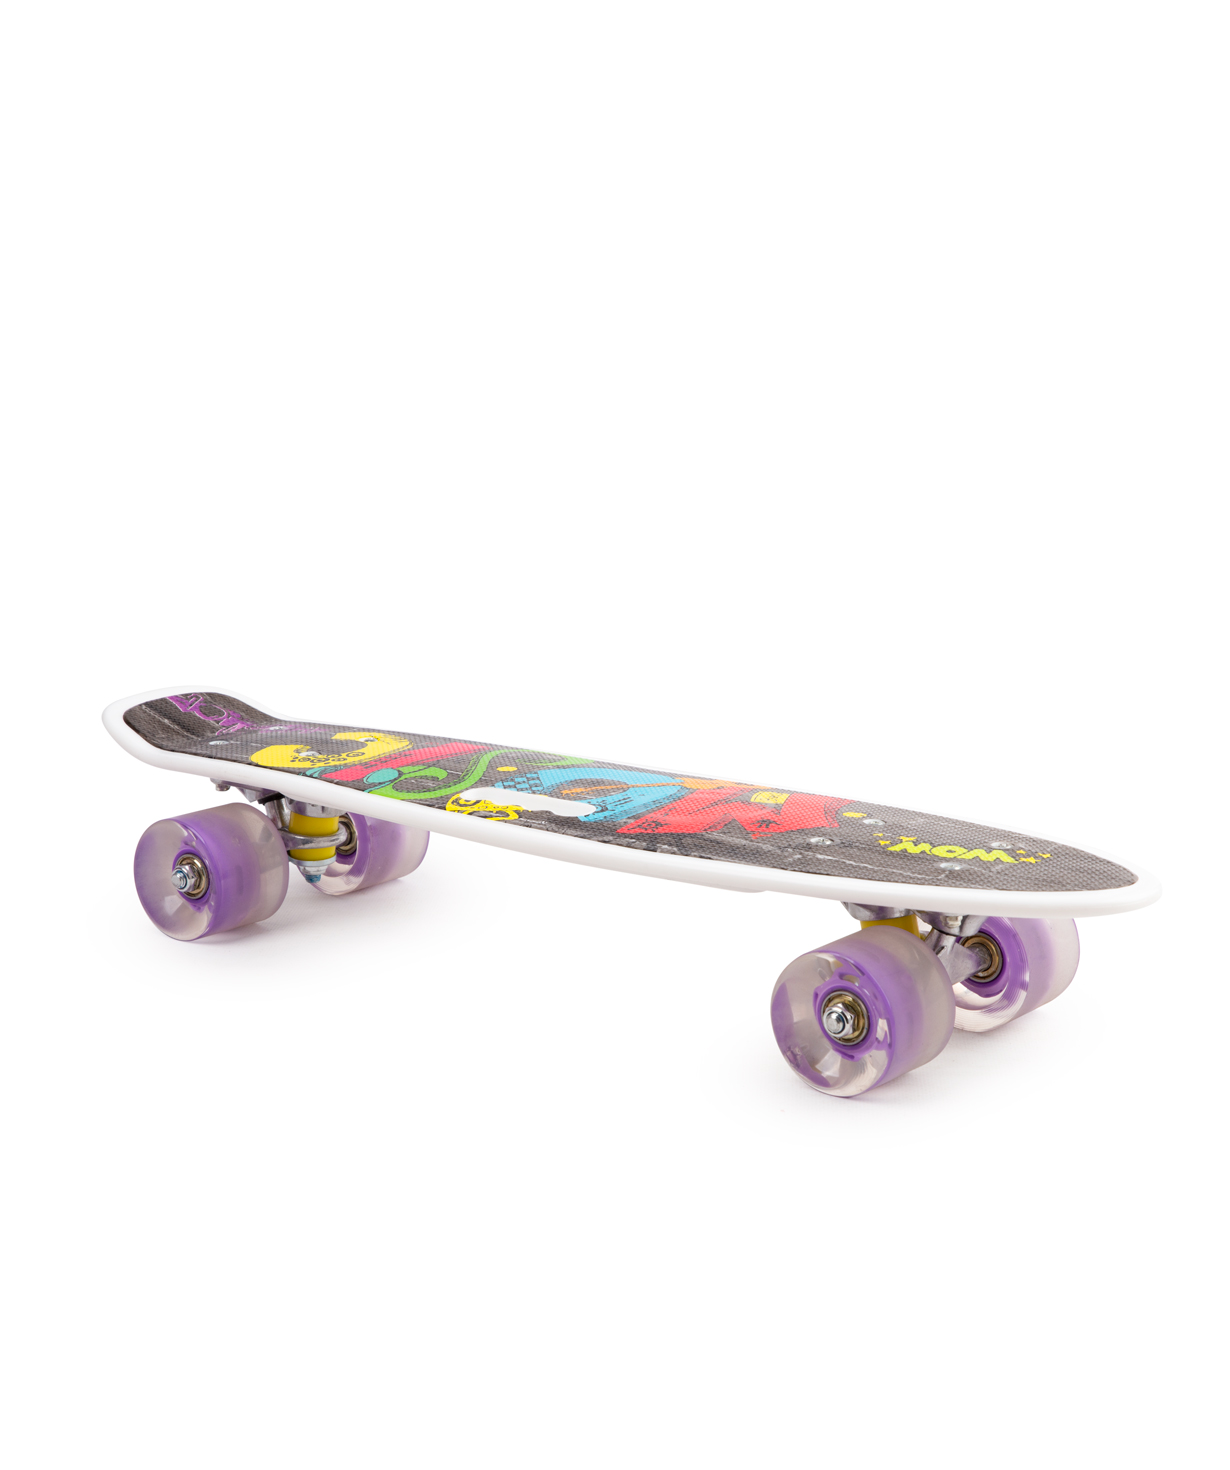 Skateboard PE-21211 №24